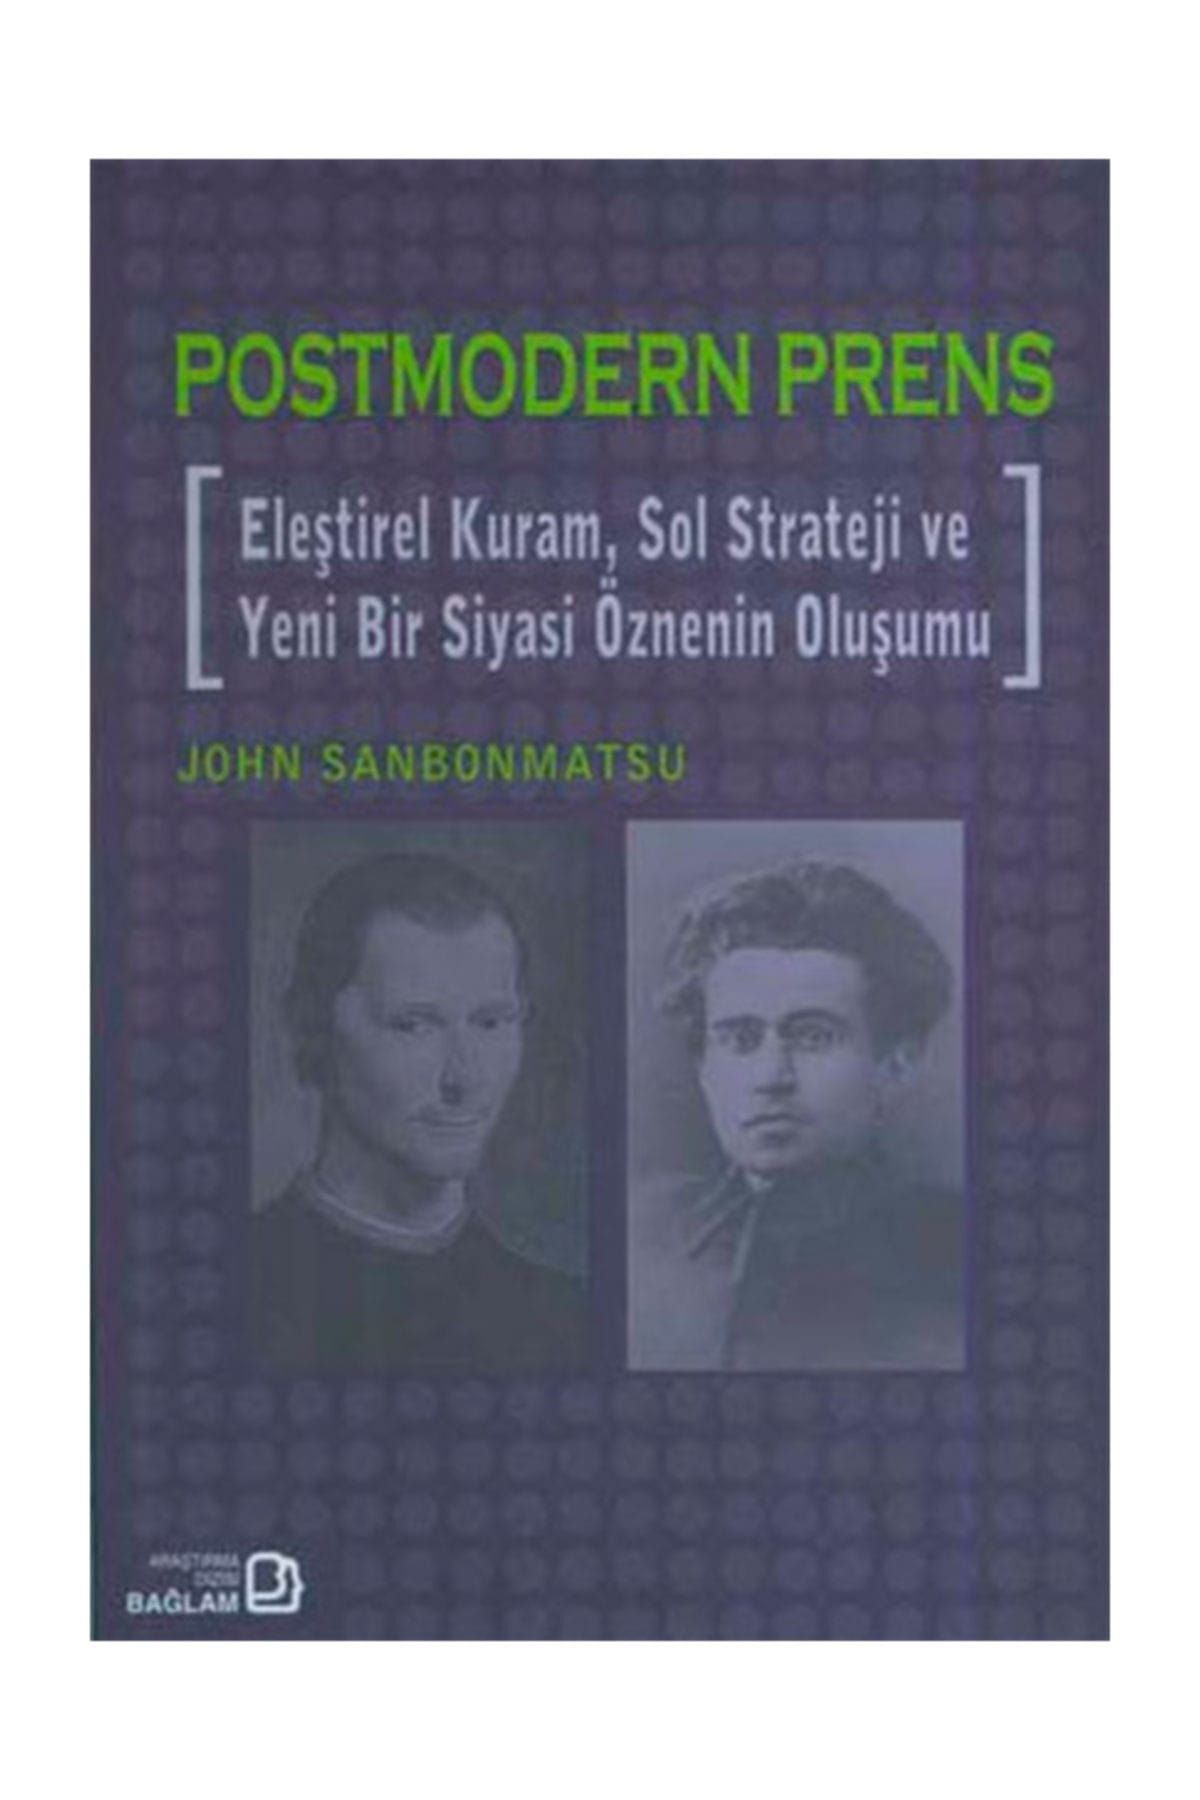 Bağlam Yayıncılık Postmodern Prens - Eleştirel Kuram, Sol Strateji ve Yeni Bir Siyasi Öznenin Oluşumu